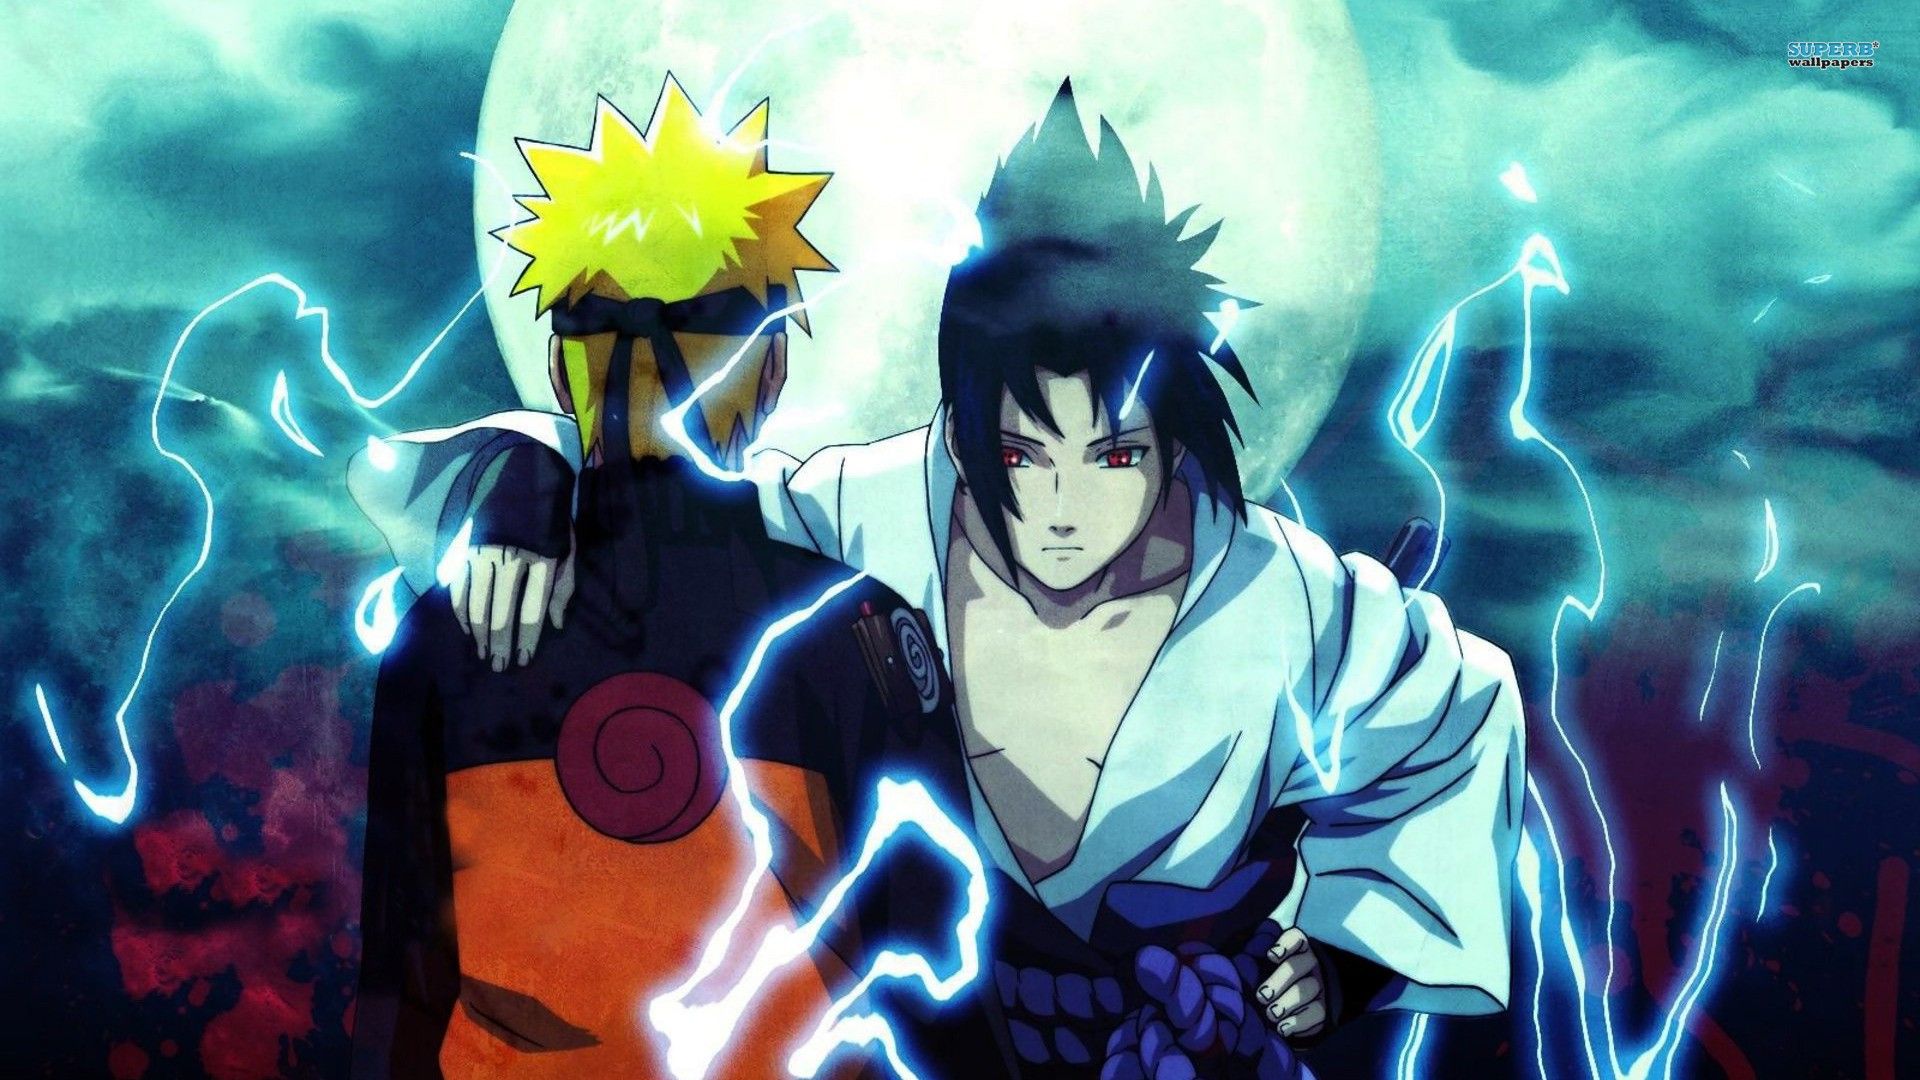 Naruto and Sasuke Wallpaper Free Naruto and Sasuke